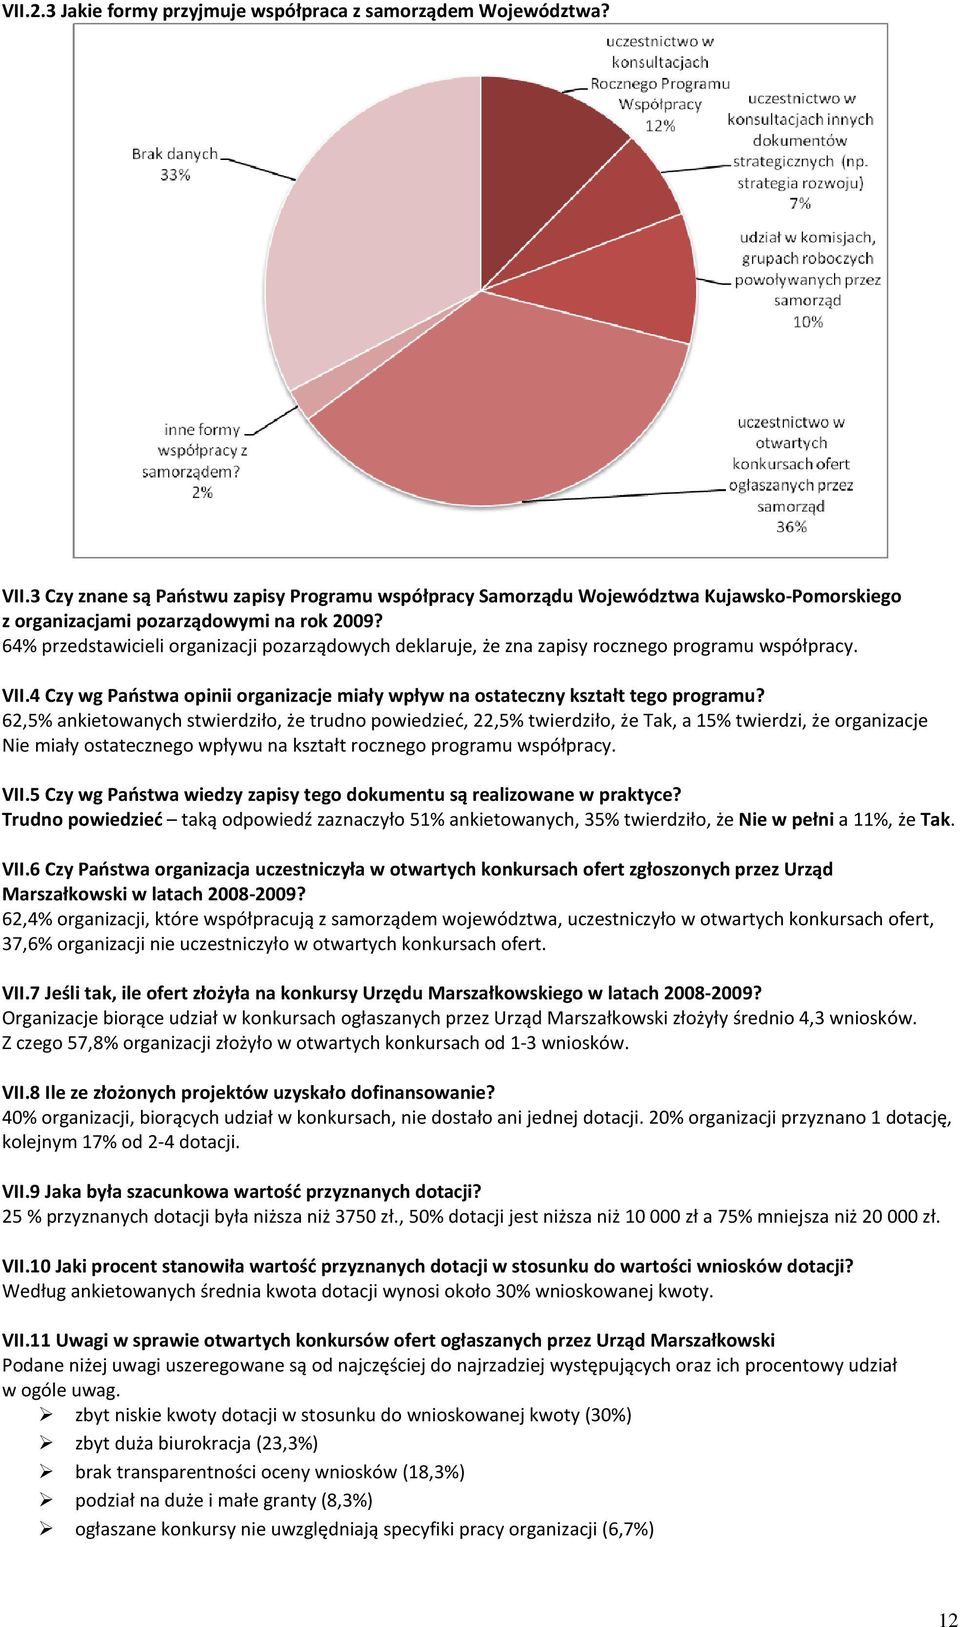 64% przedstawicieli organizacji pozarządowych deklaruje, że zna zapisy rocznego programu współpracy. VII.4 Czy wg Państwa opinii organizacje miały wpływ na ostateczny kształt tego programu?